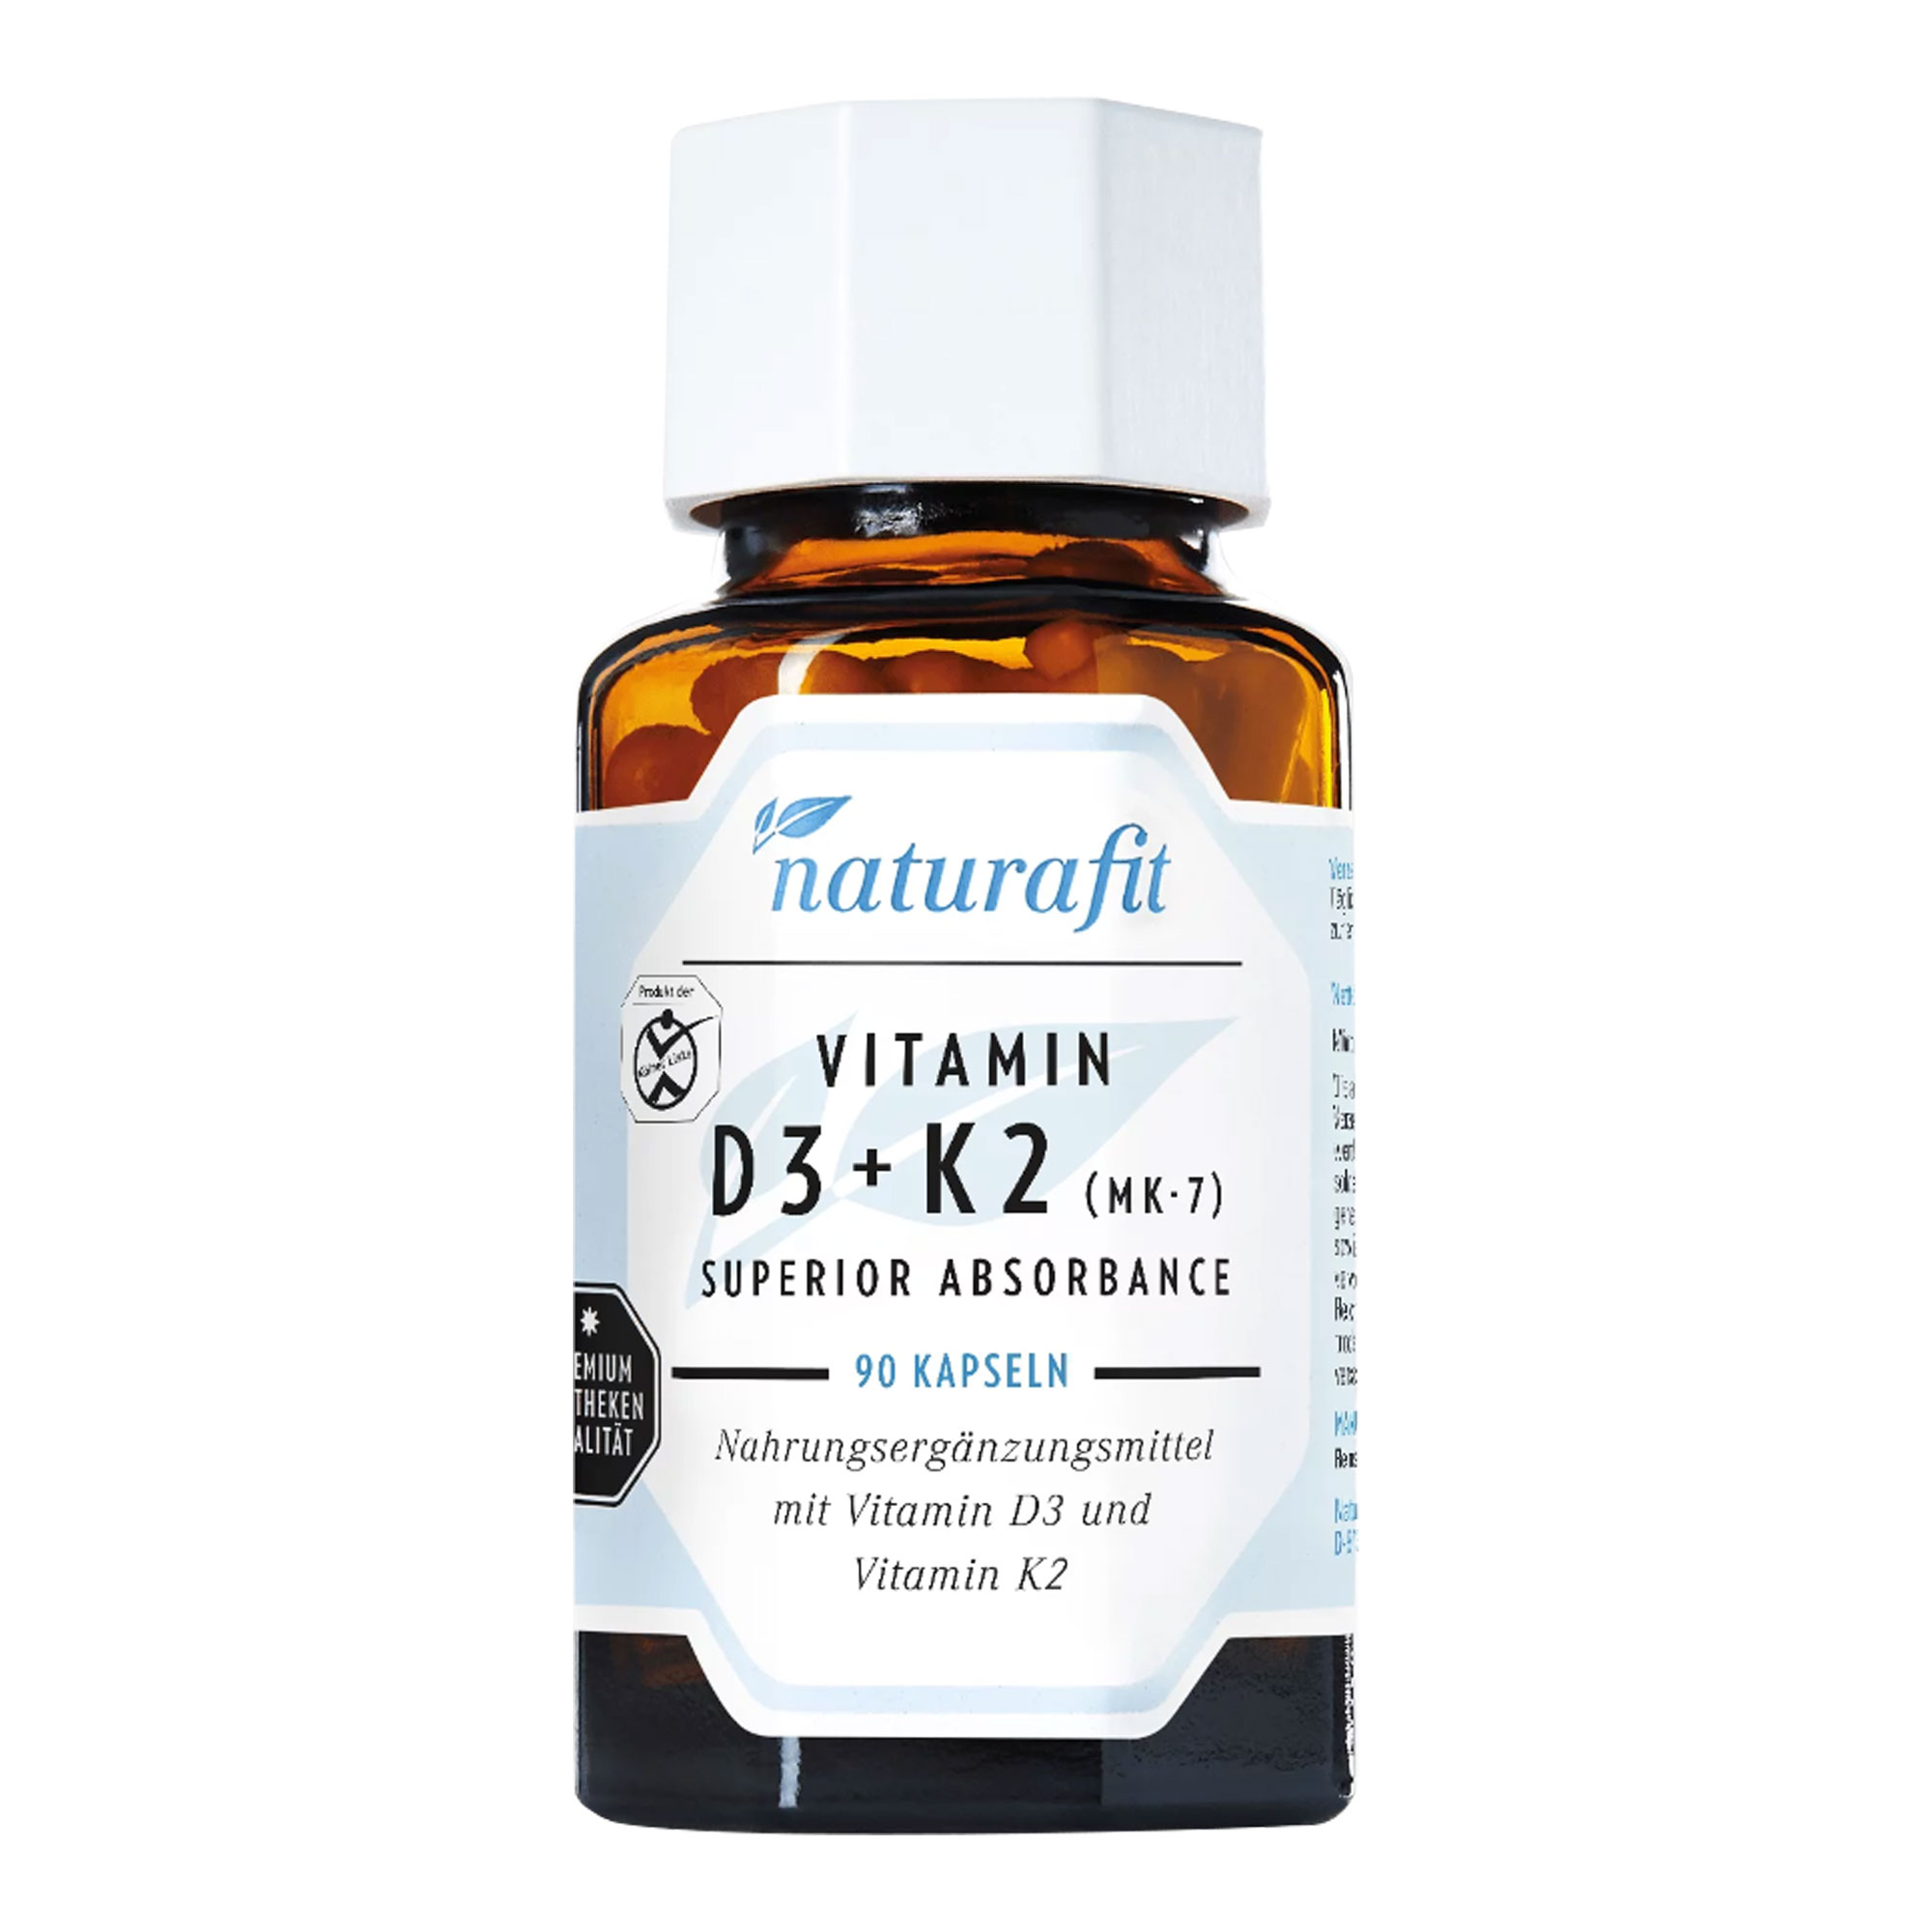 Nahrungsergänzungsmittel mit Vitamin D3 und K2. Zur Förderung des Calciumstoffwechsels.